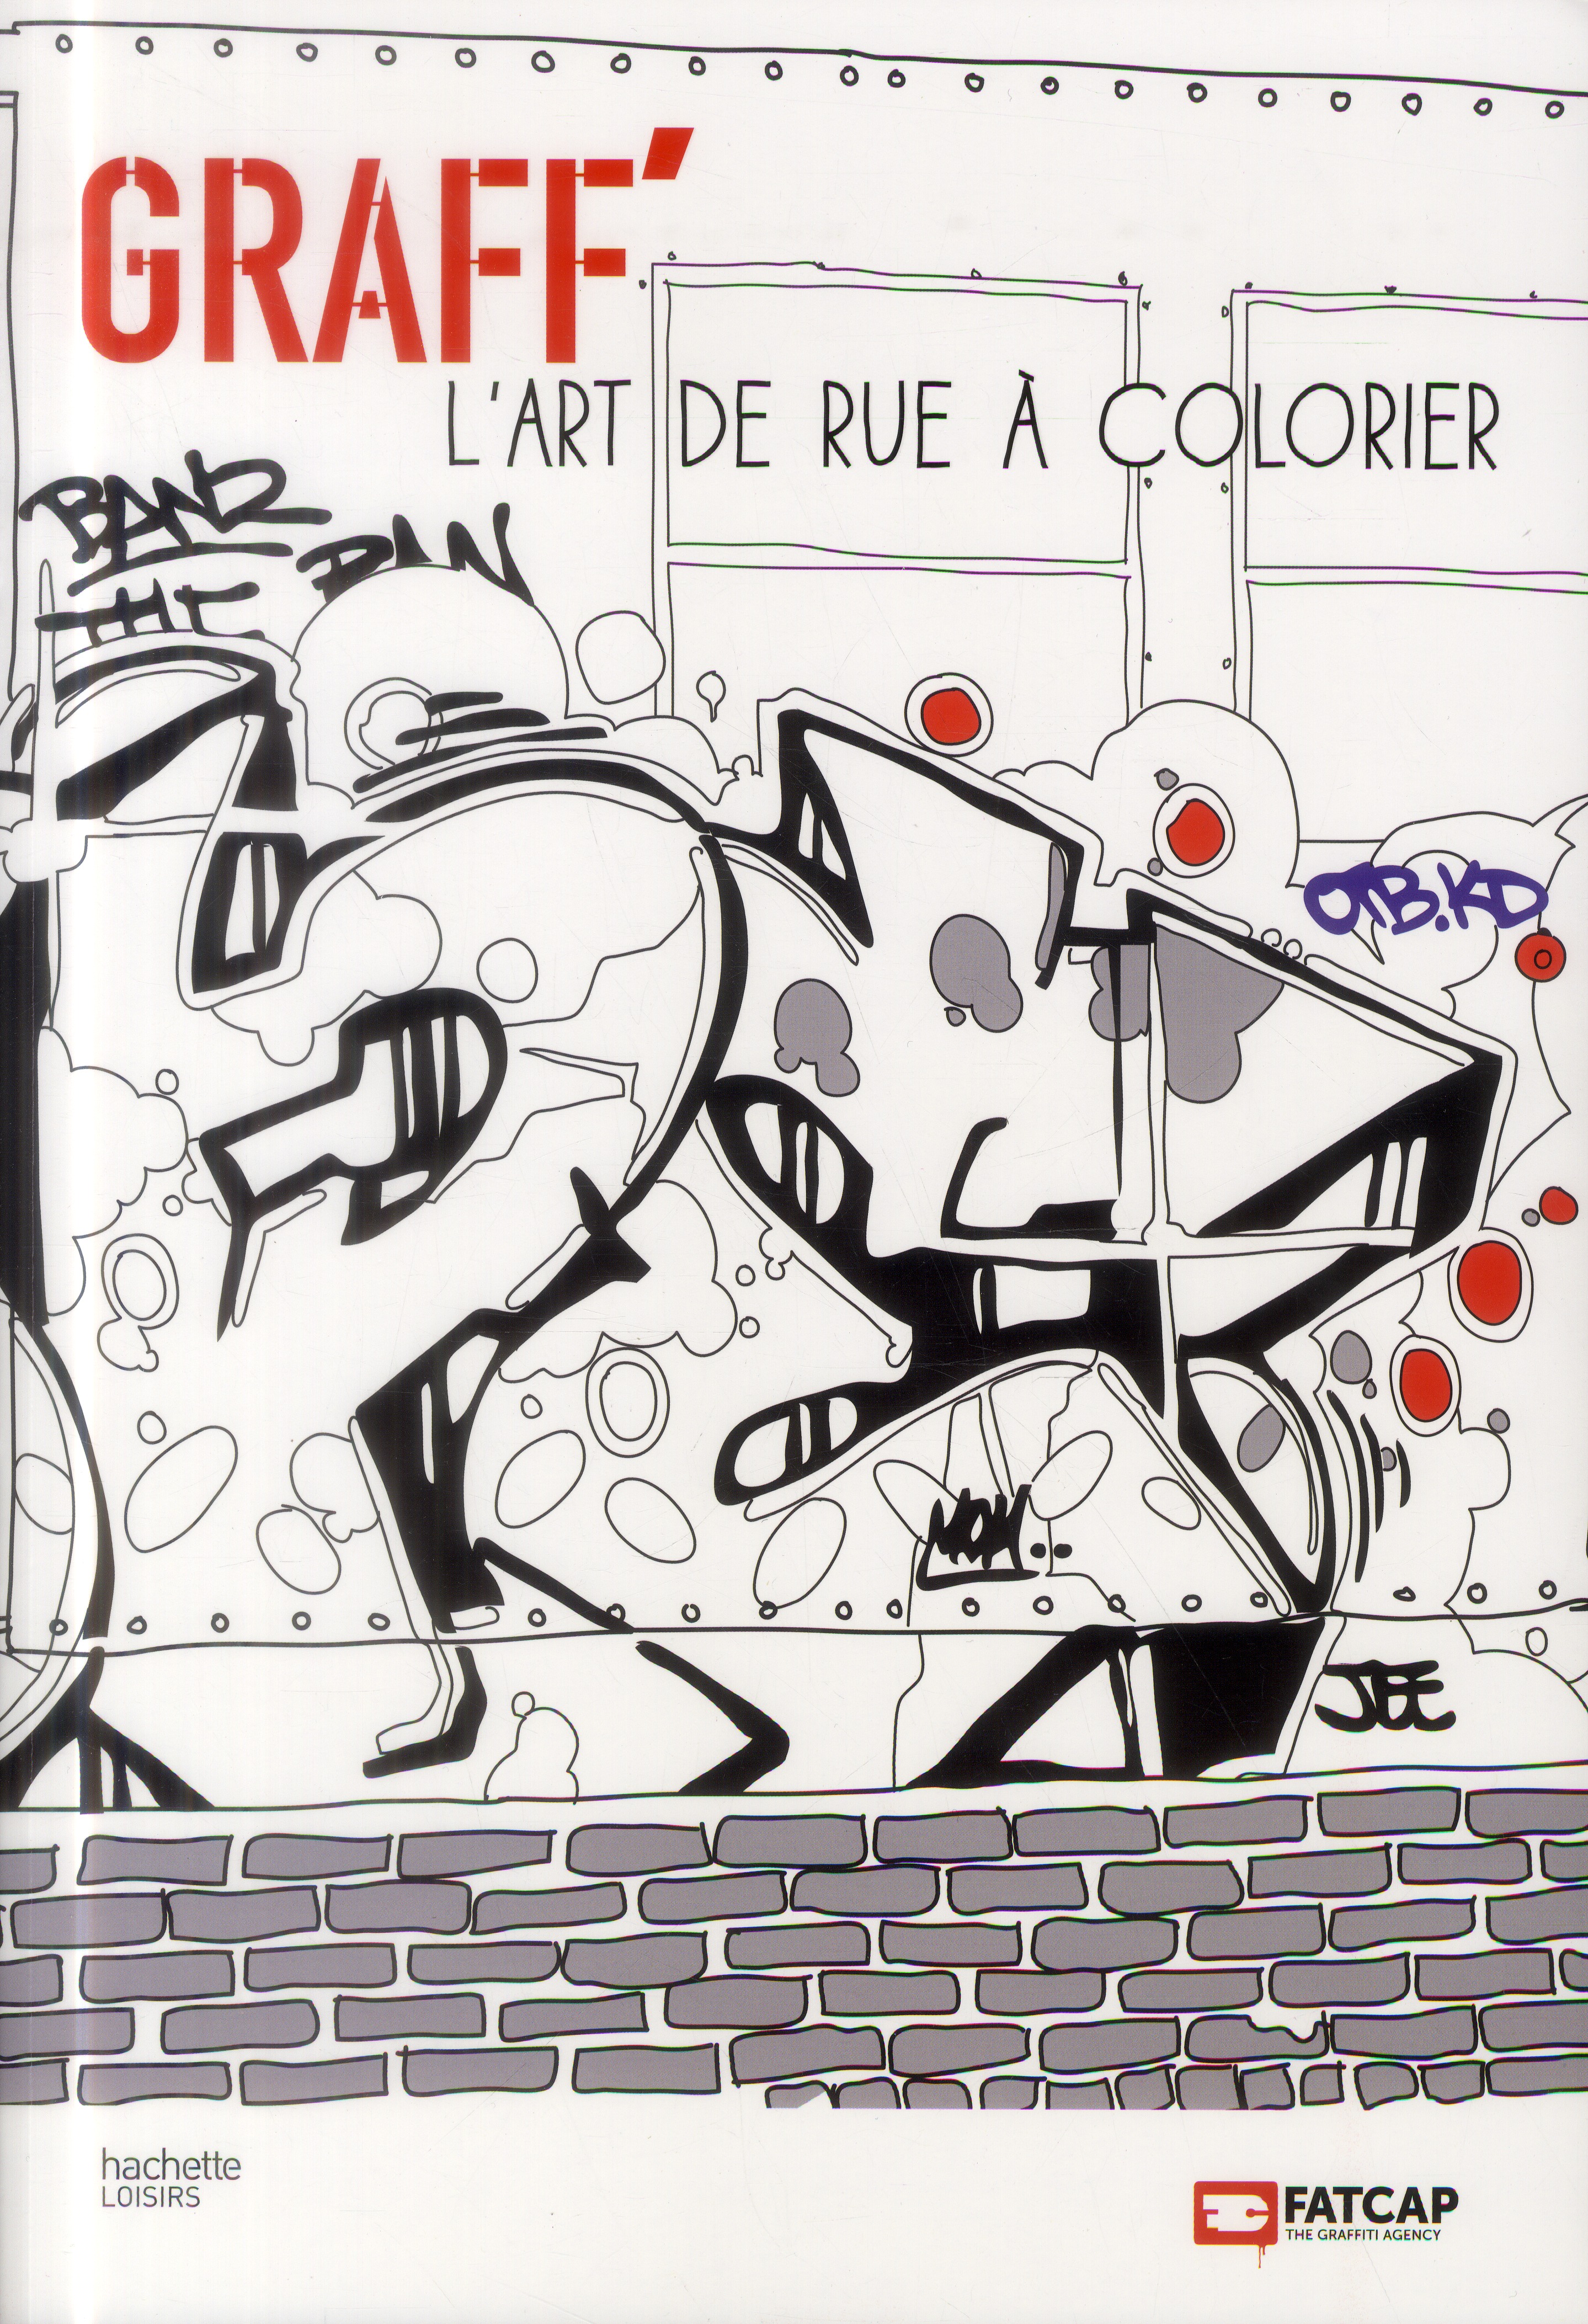 GRAFF' L'ART DE RUE A COLORIER